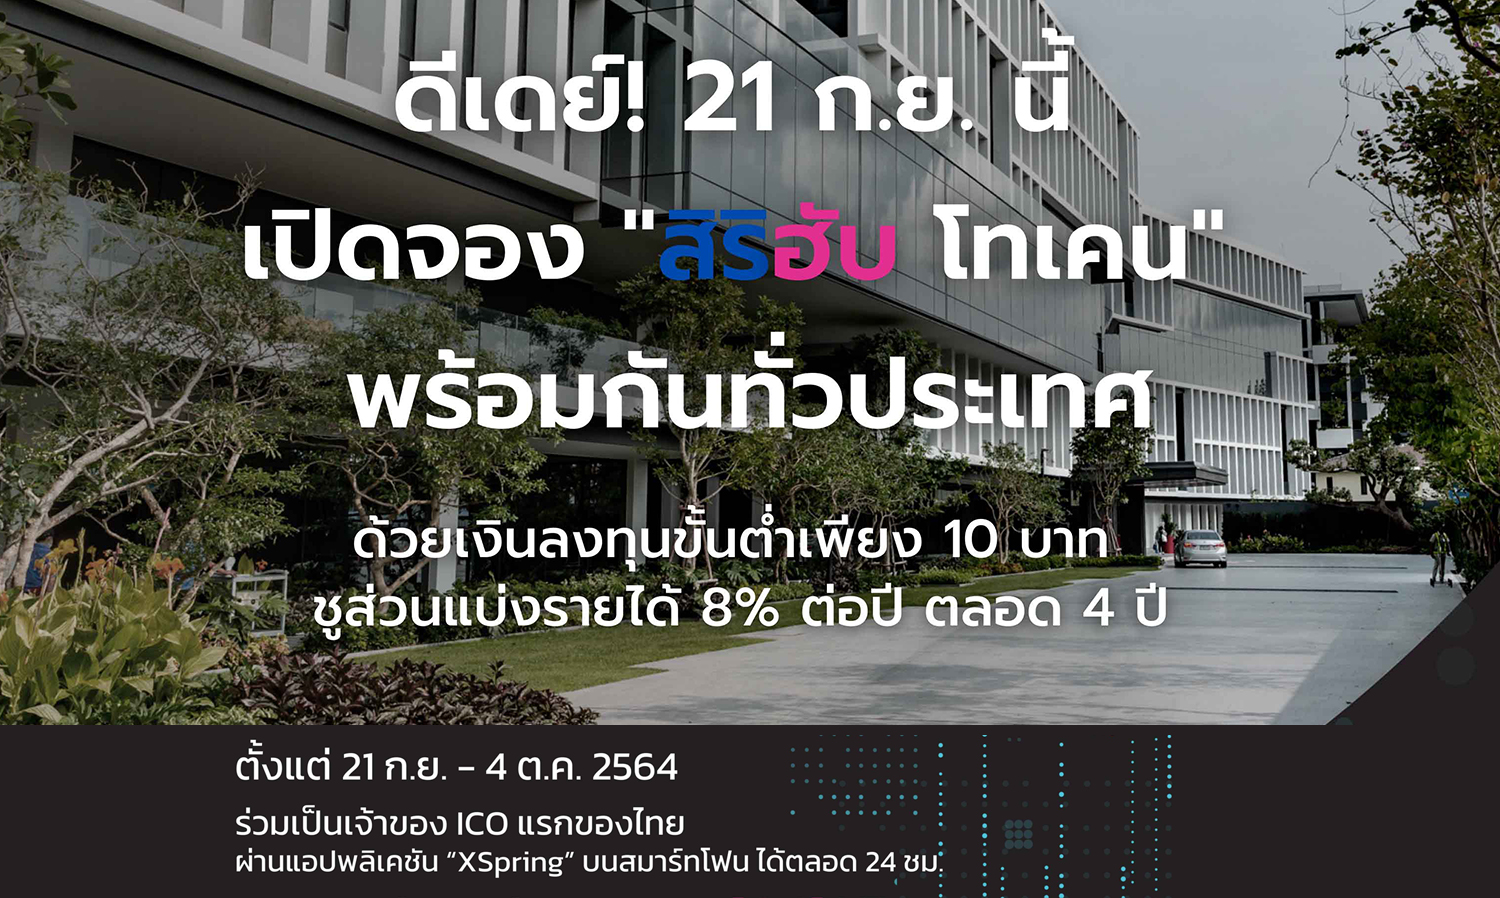 สิริฮับ ดีเดย์ เปิดจองวันแรก 21 ก.ย. นี้ Real Estate-Backed ICO ตัวแรกของไทย ชูส่วนแบ่งรายได้ 8% ต่อปี ตลอด 4 ปี